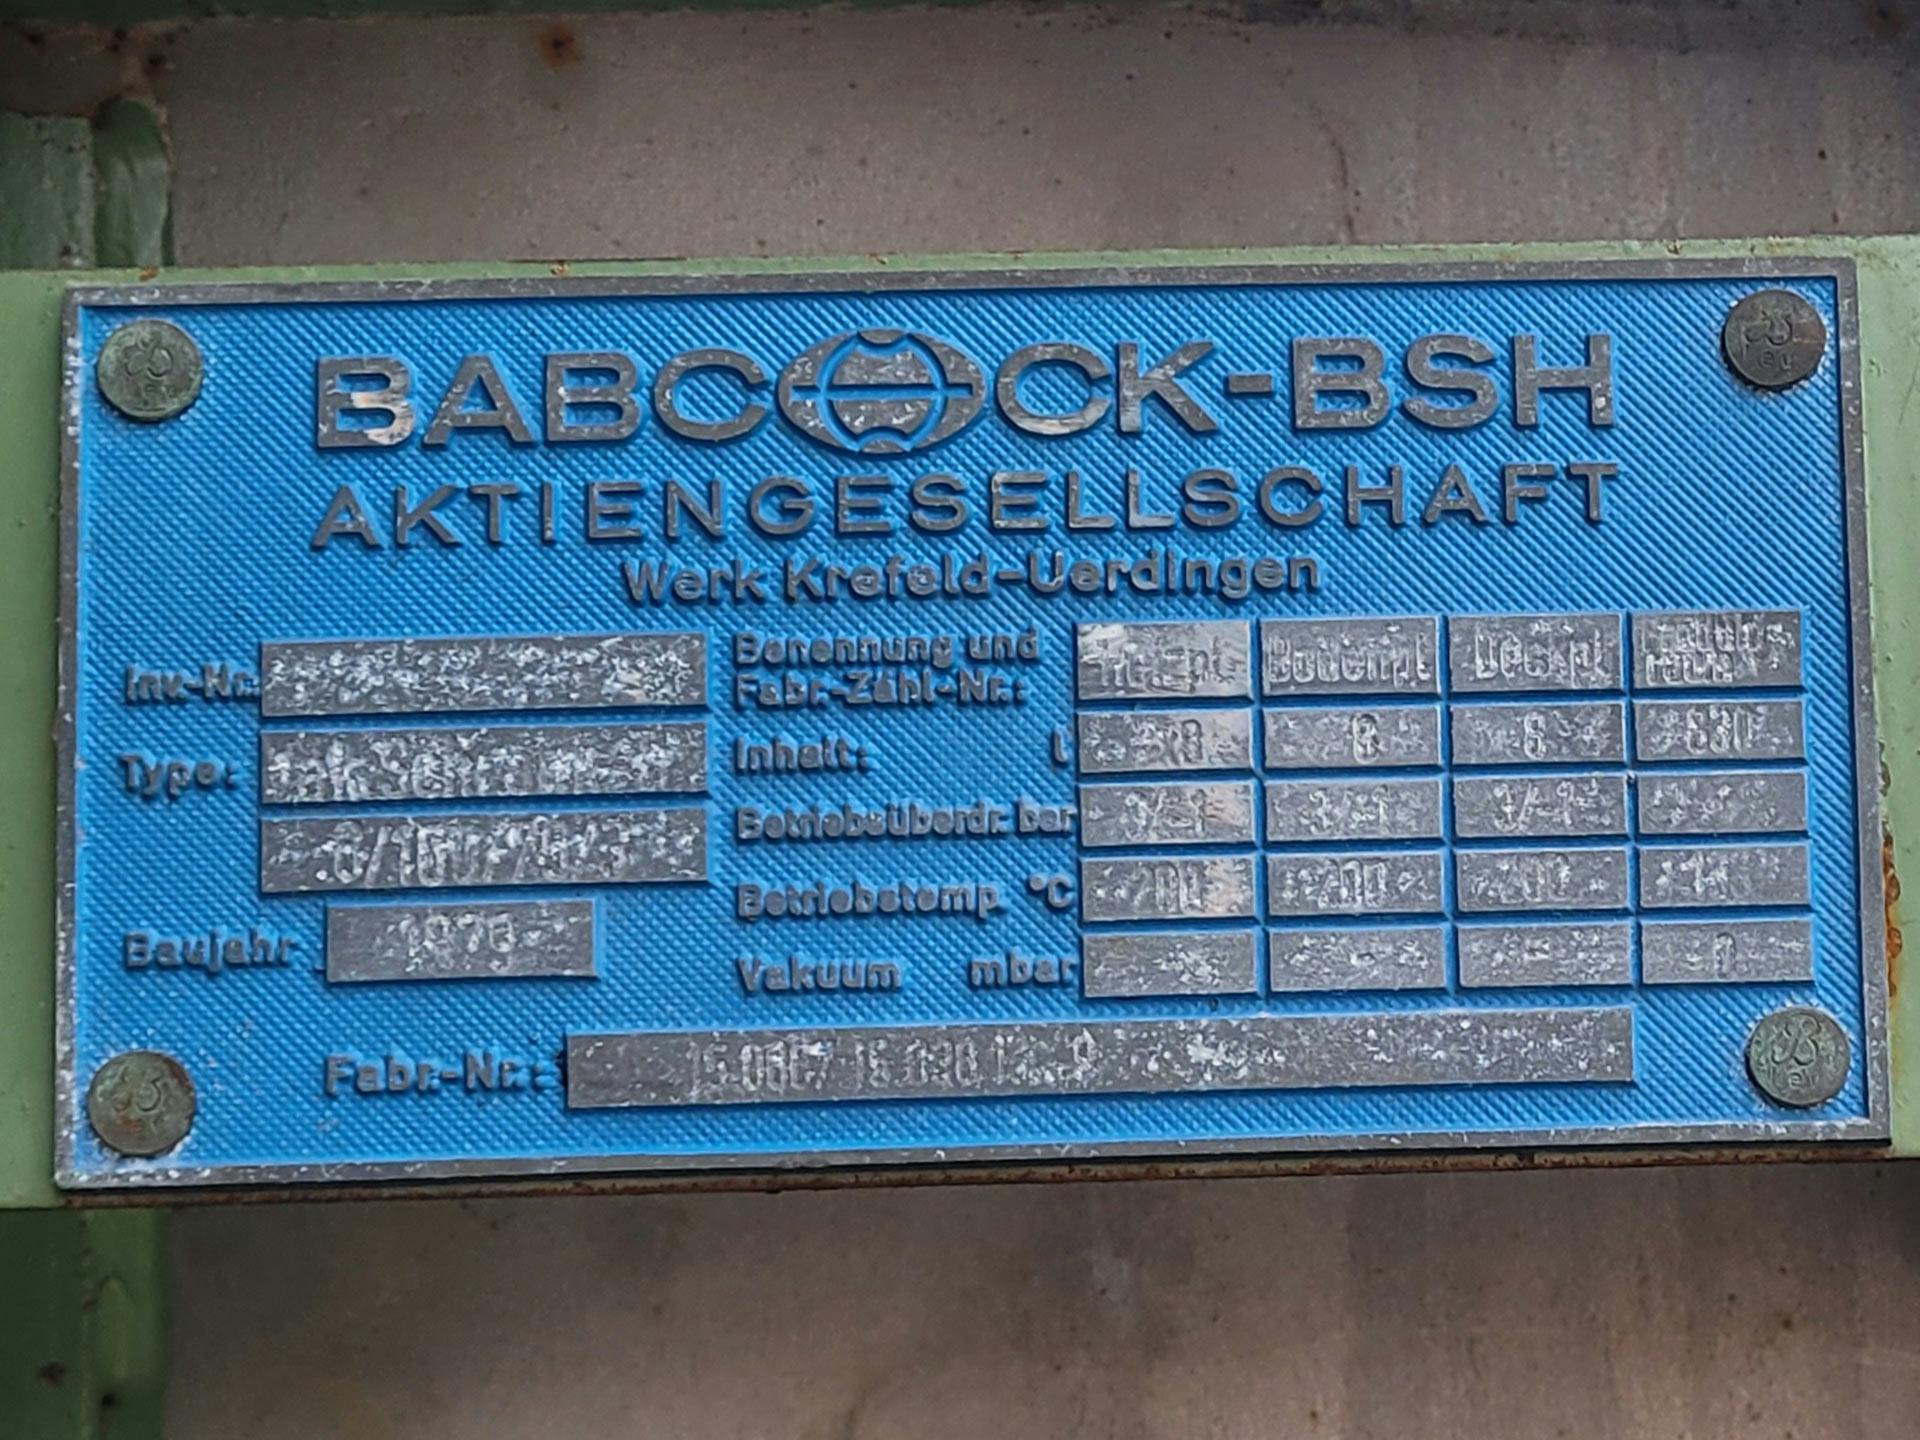 Babcock-BSH 8/100/75/3 - Secador de bandejas - image 4